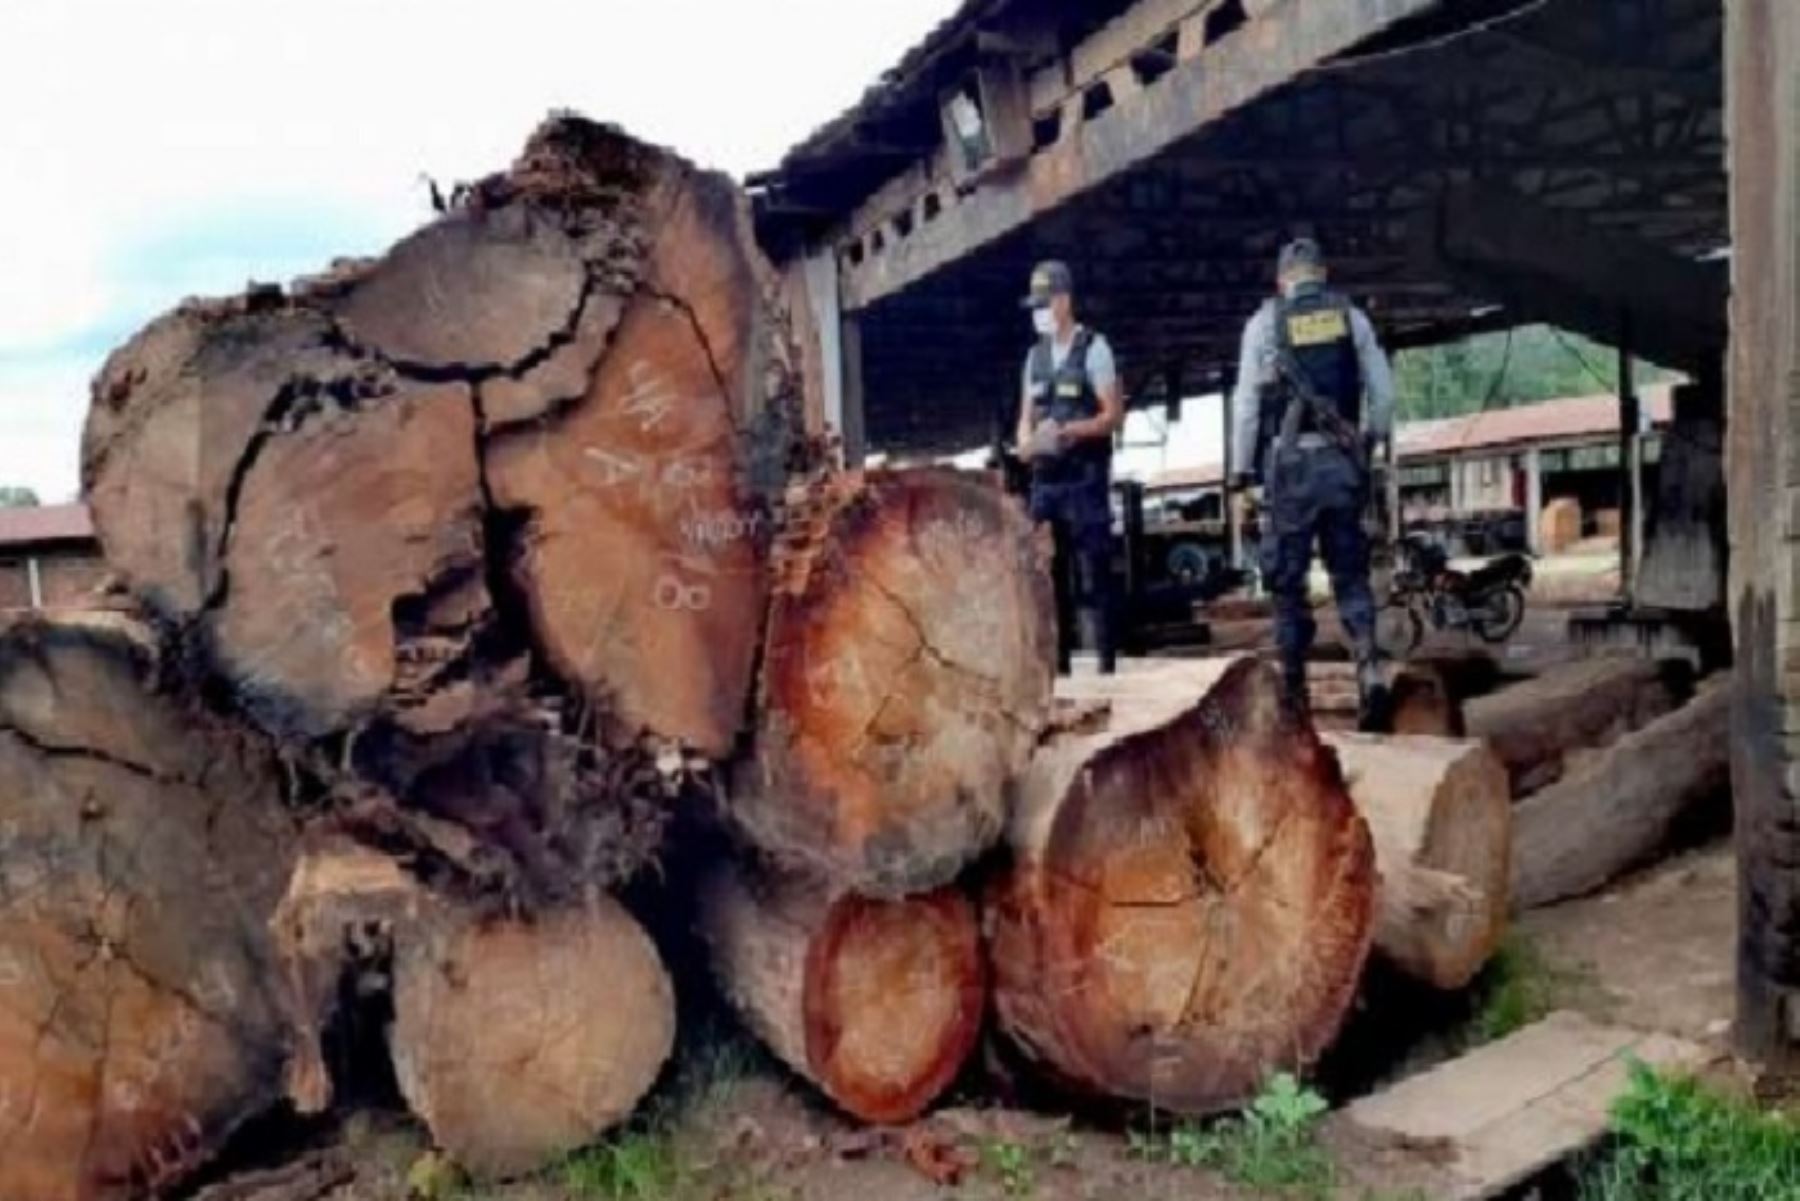 El lote de madera incautada de diferentes especies, carecía de documentos que acrediten su legalidad para su explotación, transporte y transformación.